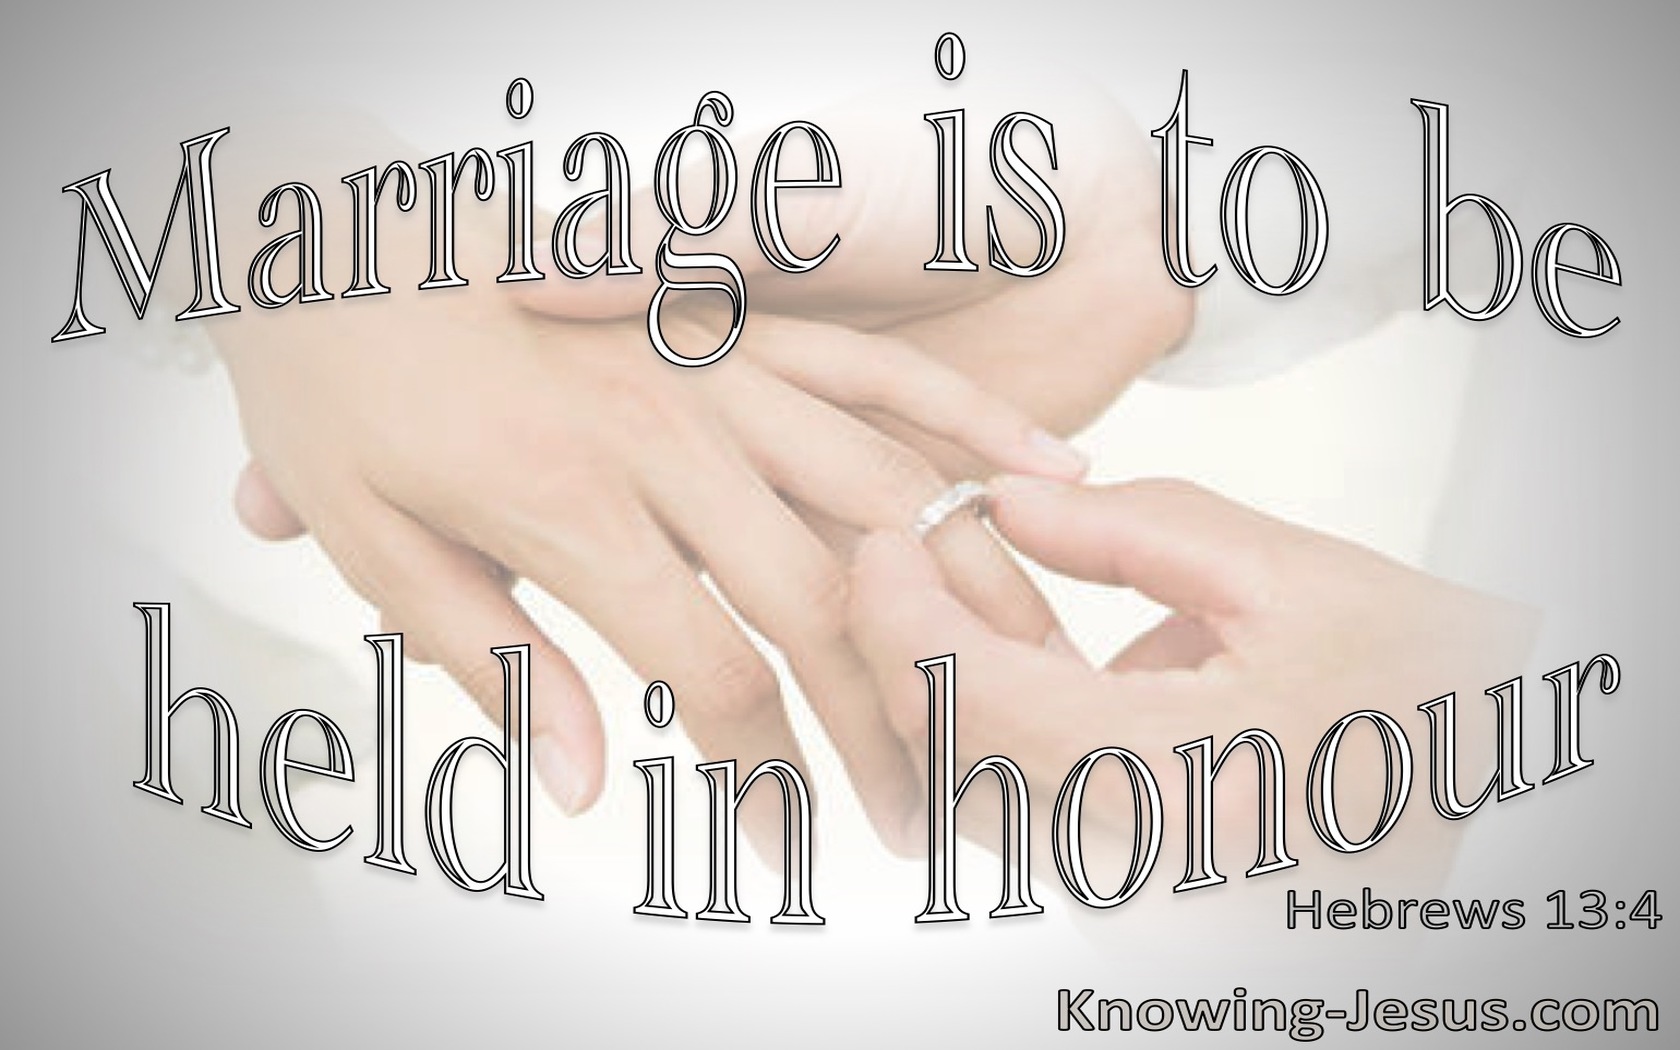 Hebrews 13:4 Marriage Is To Be Held In Honour (gray)